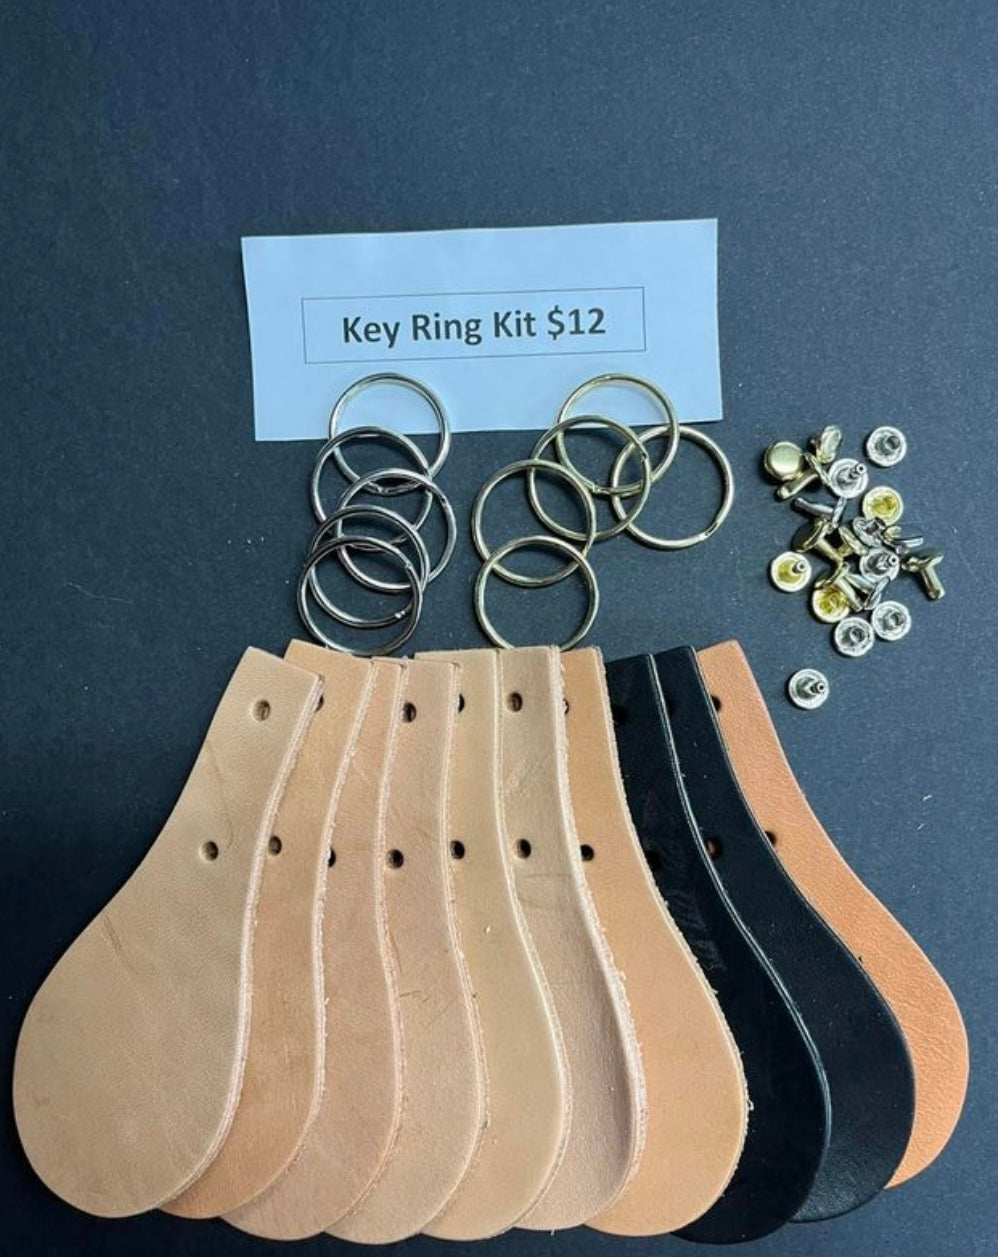 Drovers Saddlery Made Key Ring Kit